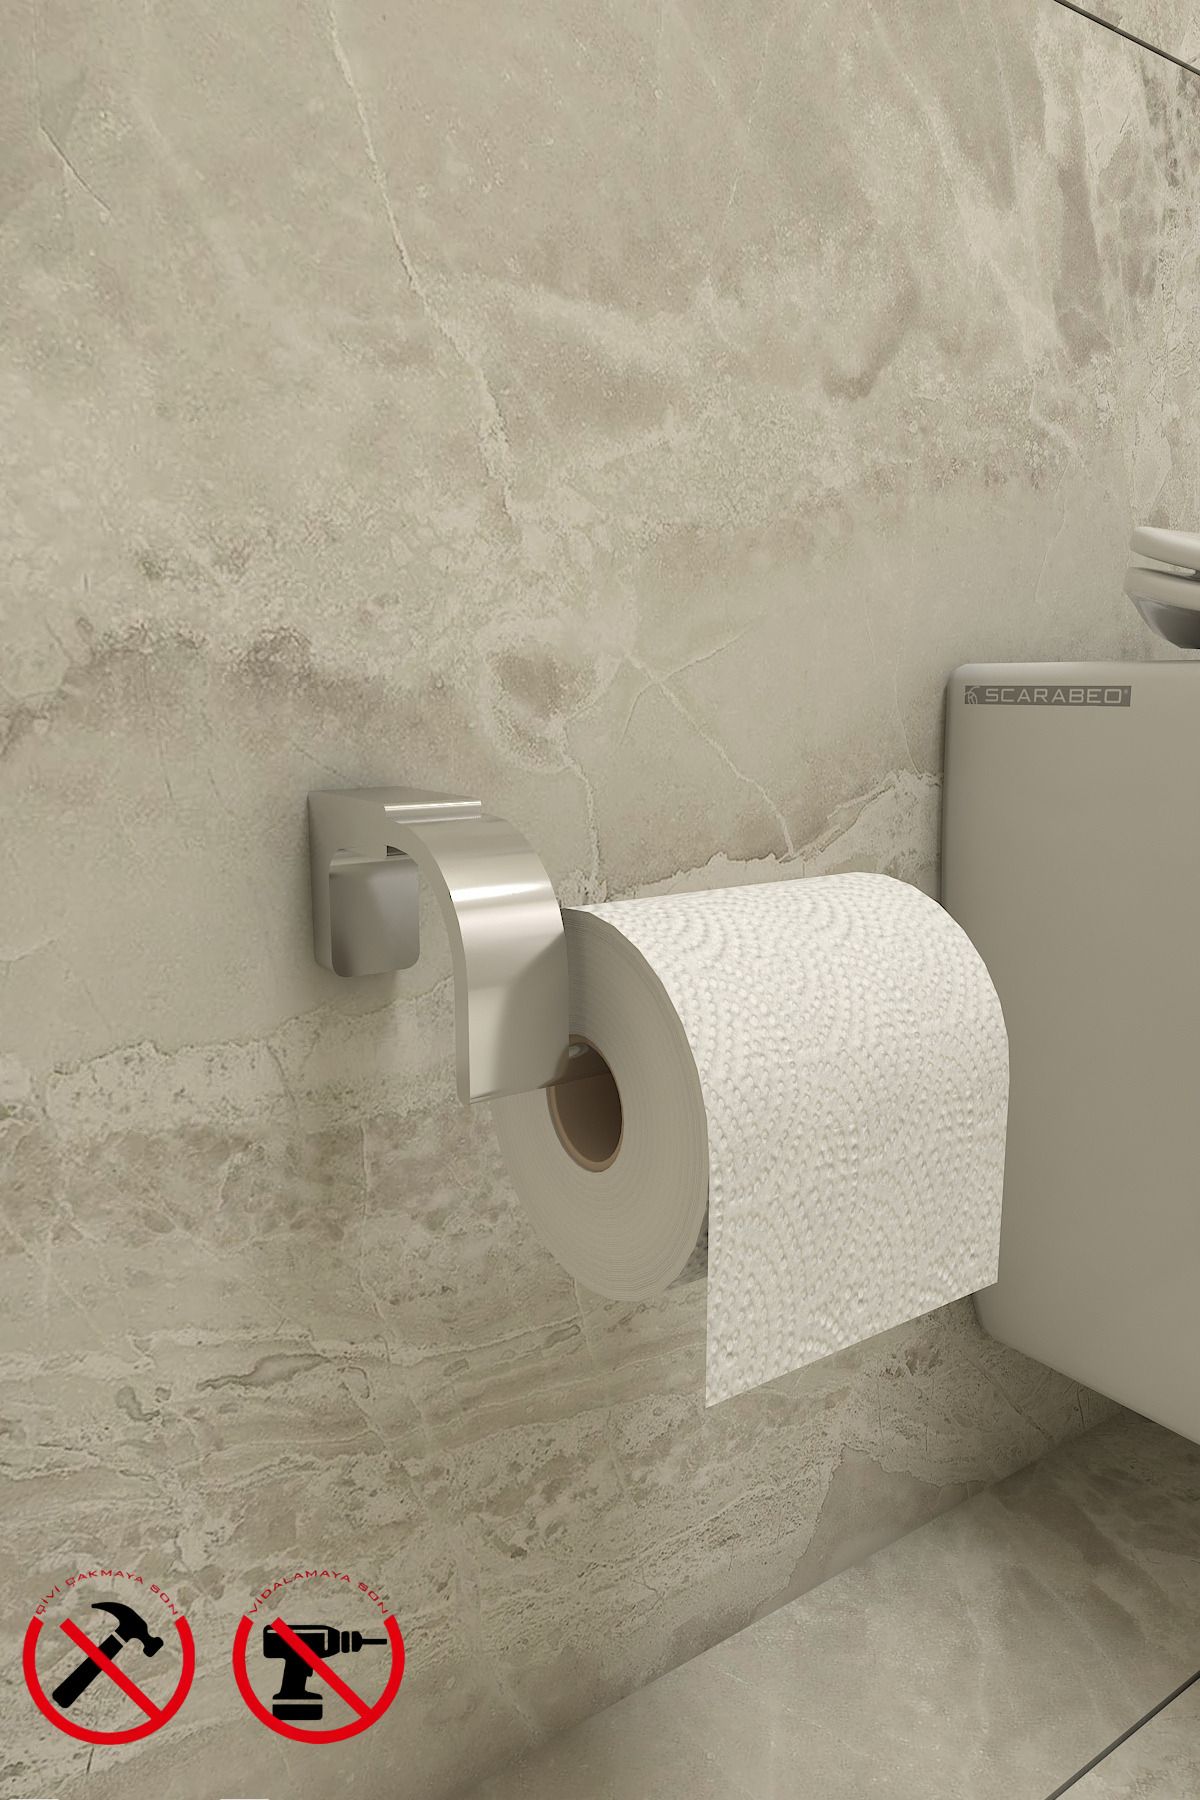 Alper Banyo Krom F1 Model Paslanmaz Tuvalet Kağıdı Askısı Tuvalet Kağıtlığı 5 Yıl Garantili